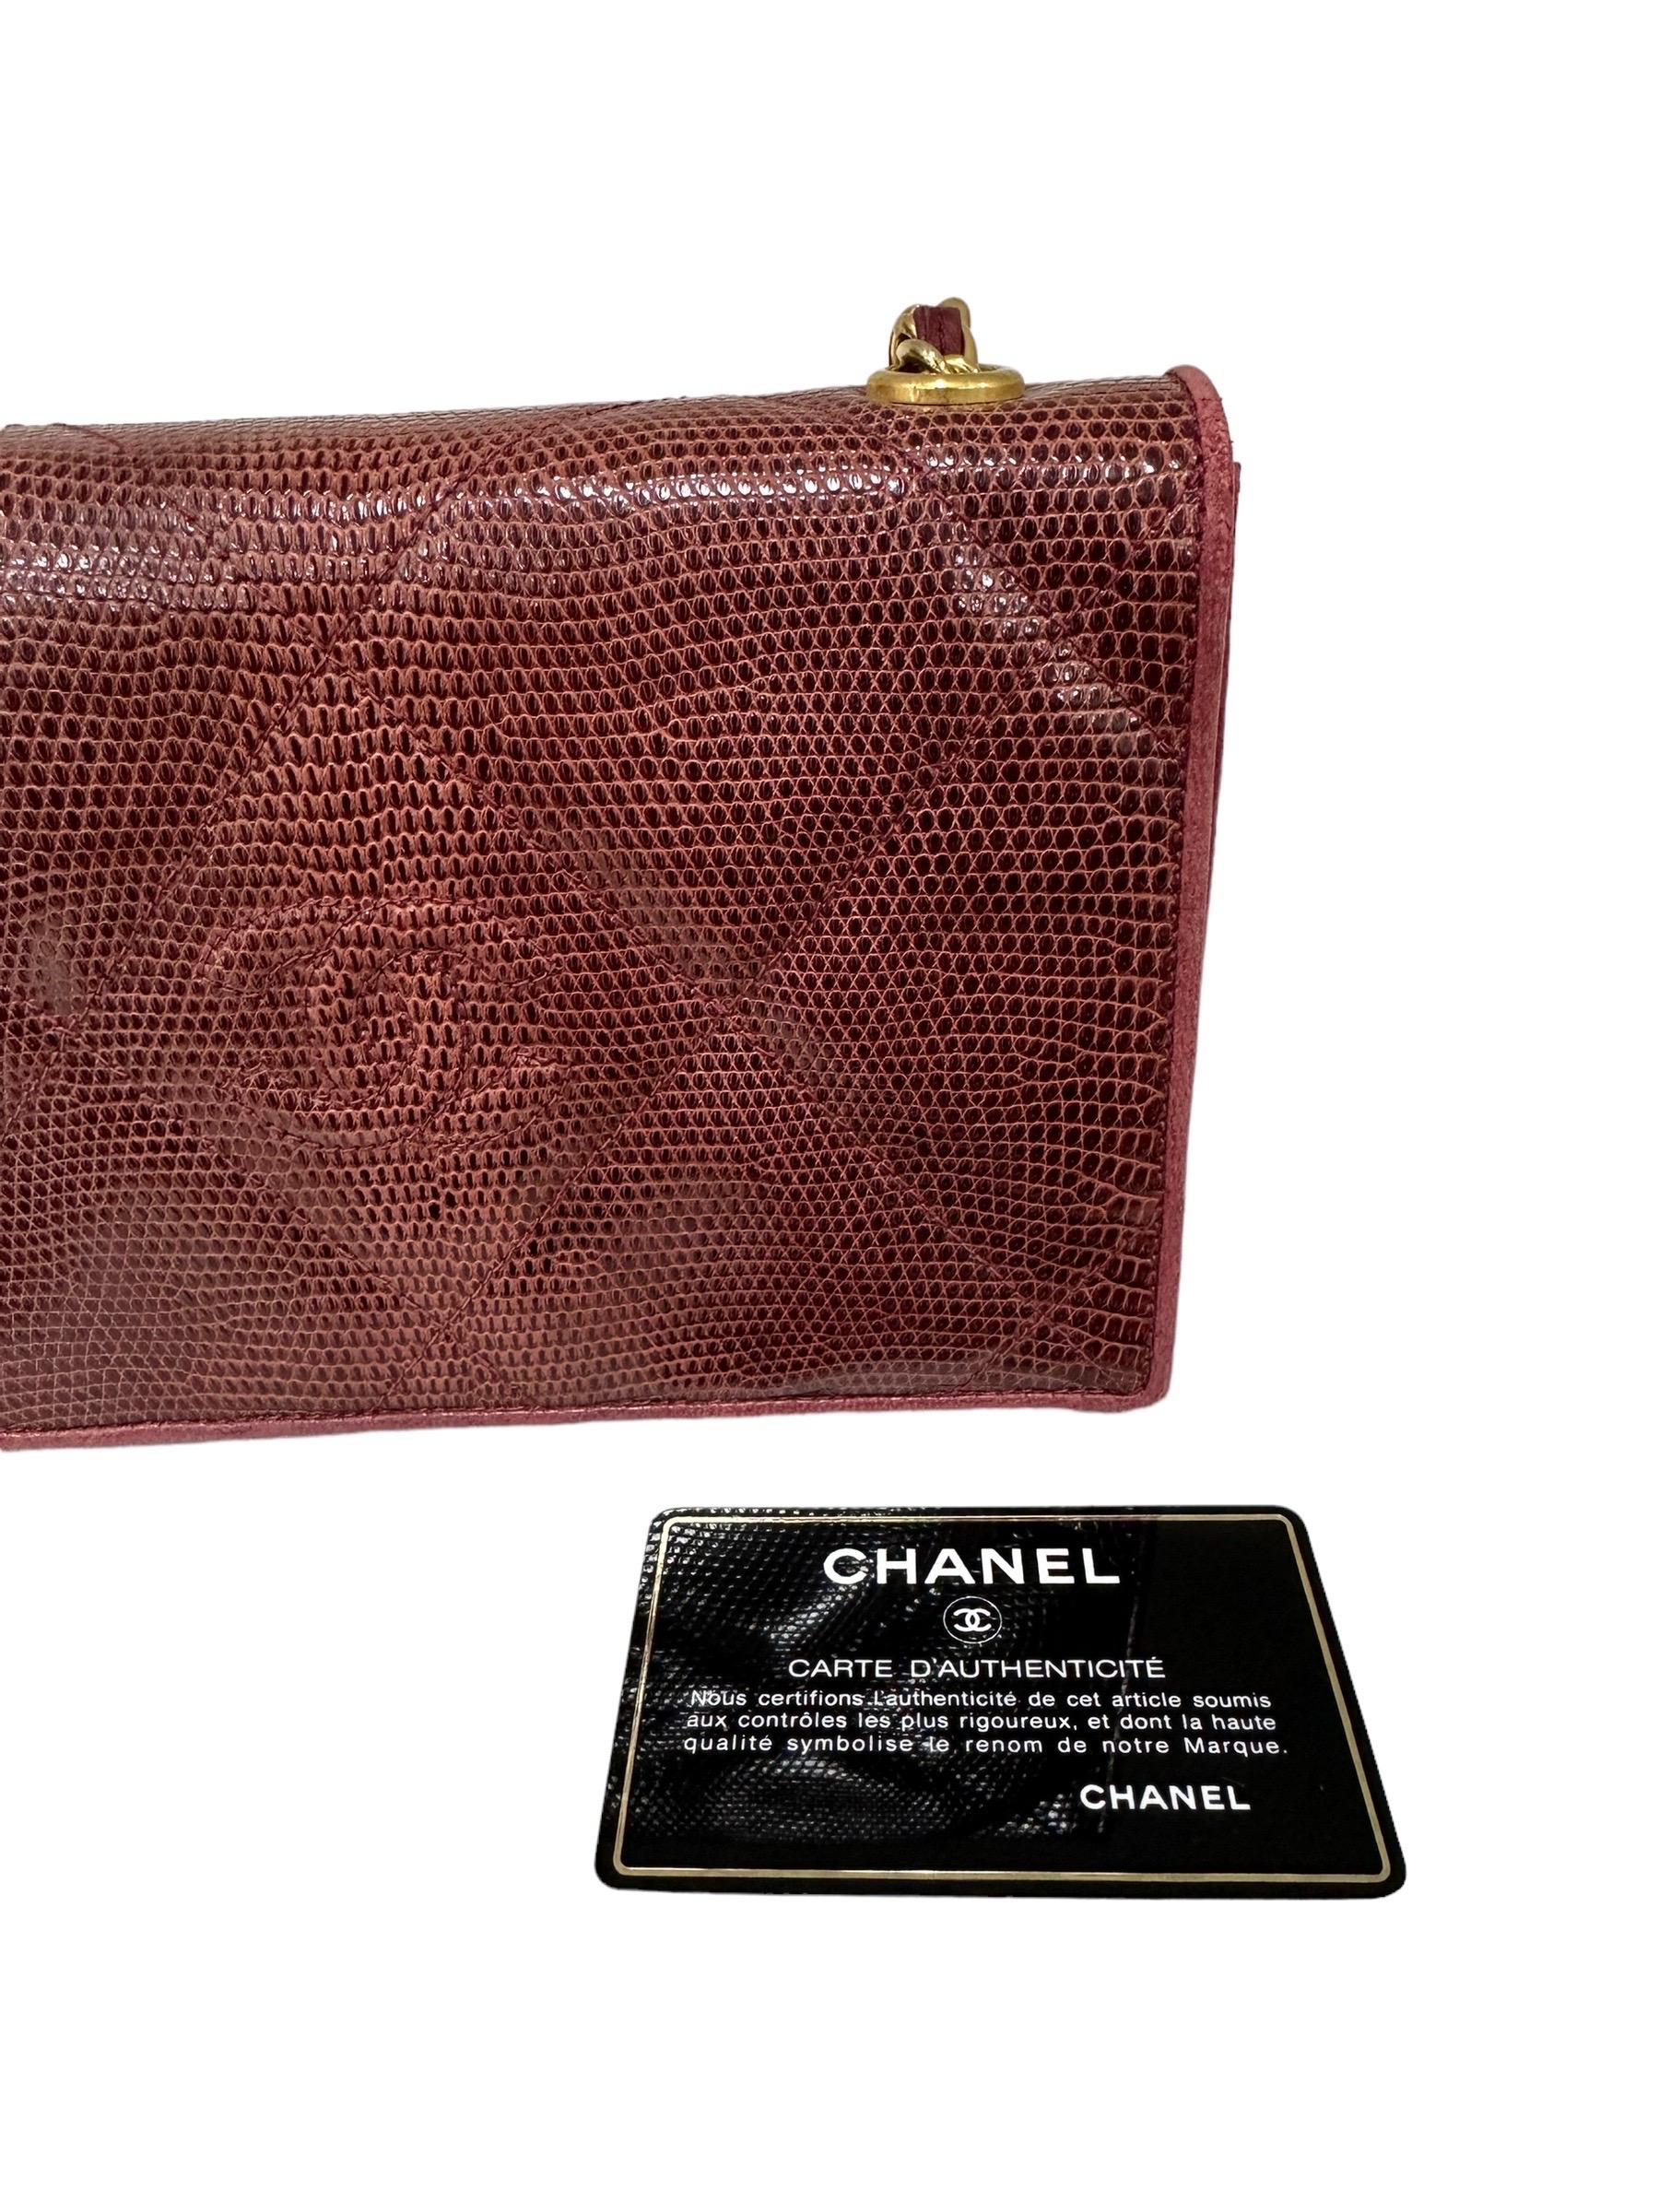 1988 Chanel Bordeaux Leather Shoulder Vintage Bag For Sale 4